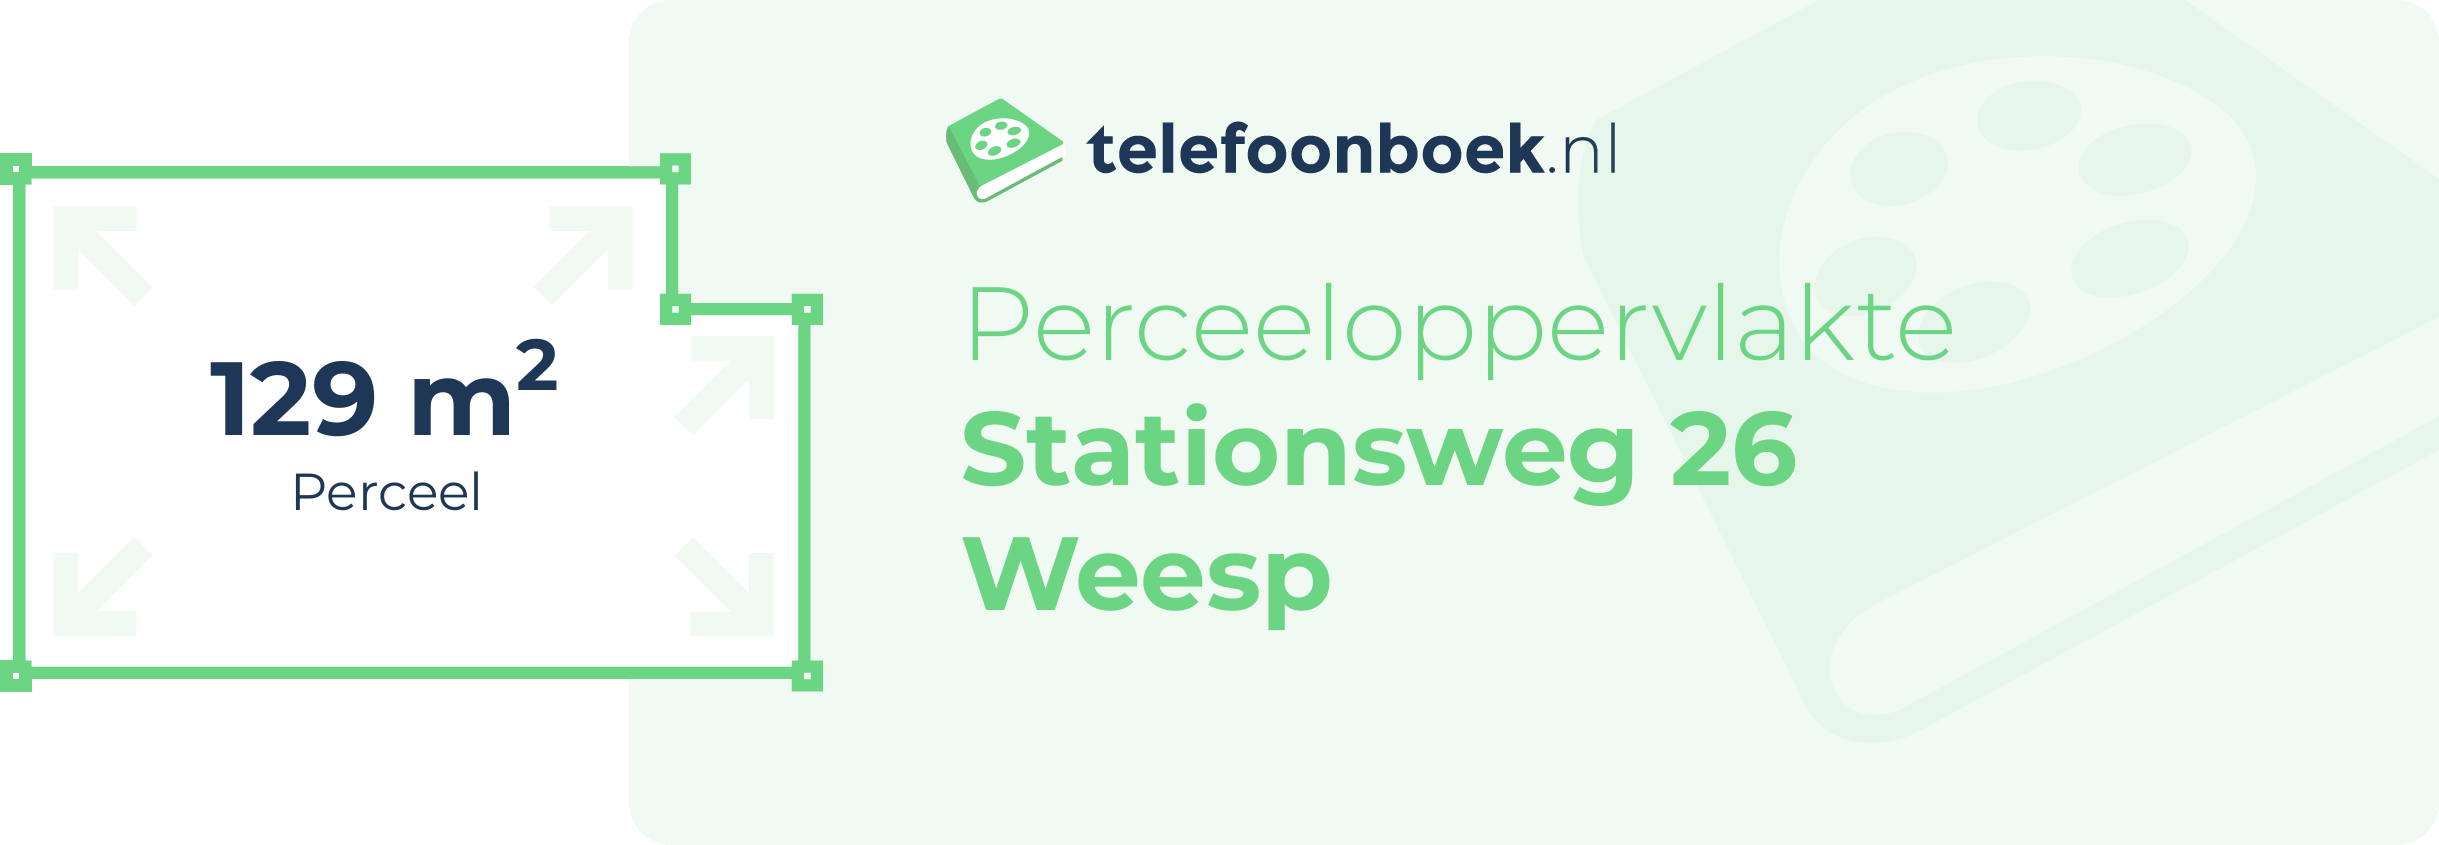 Perceeloppervlakte Stationsweg 26 Weesp